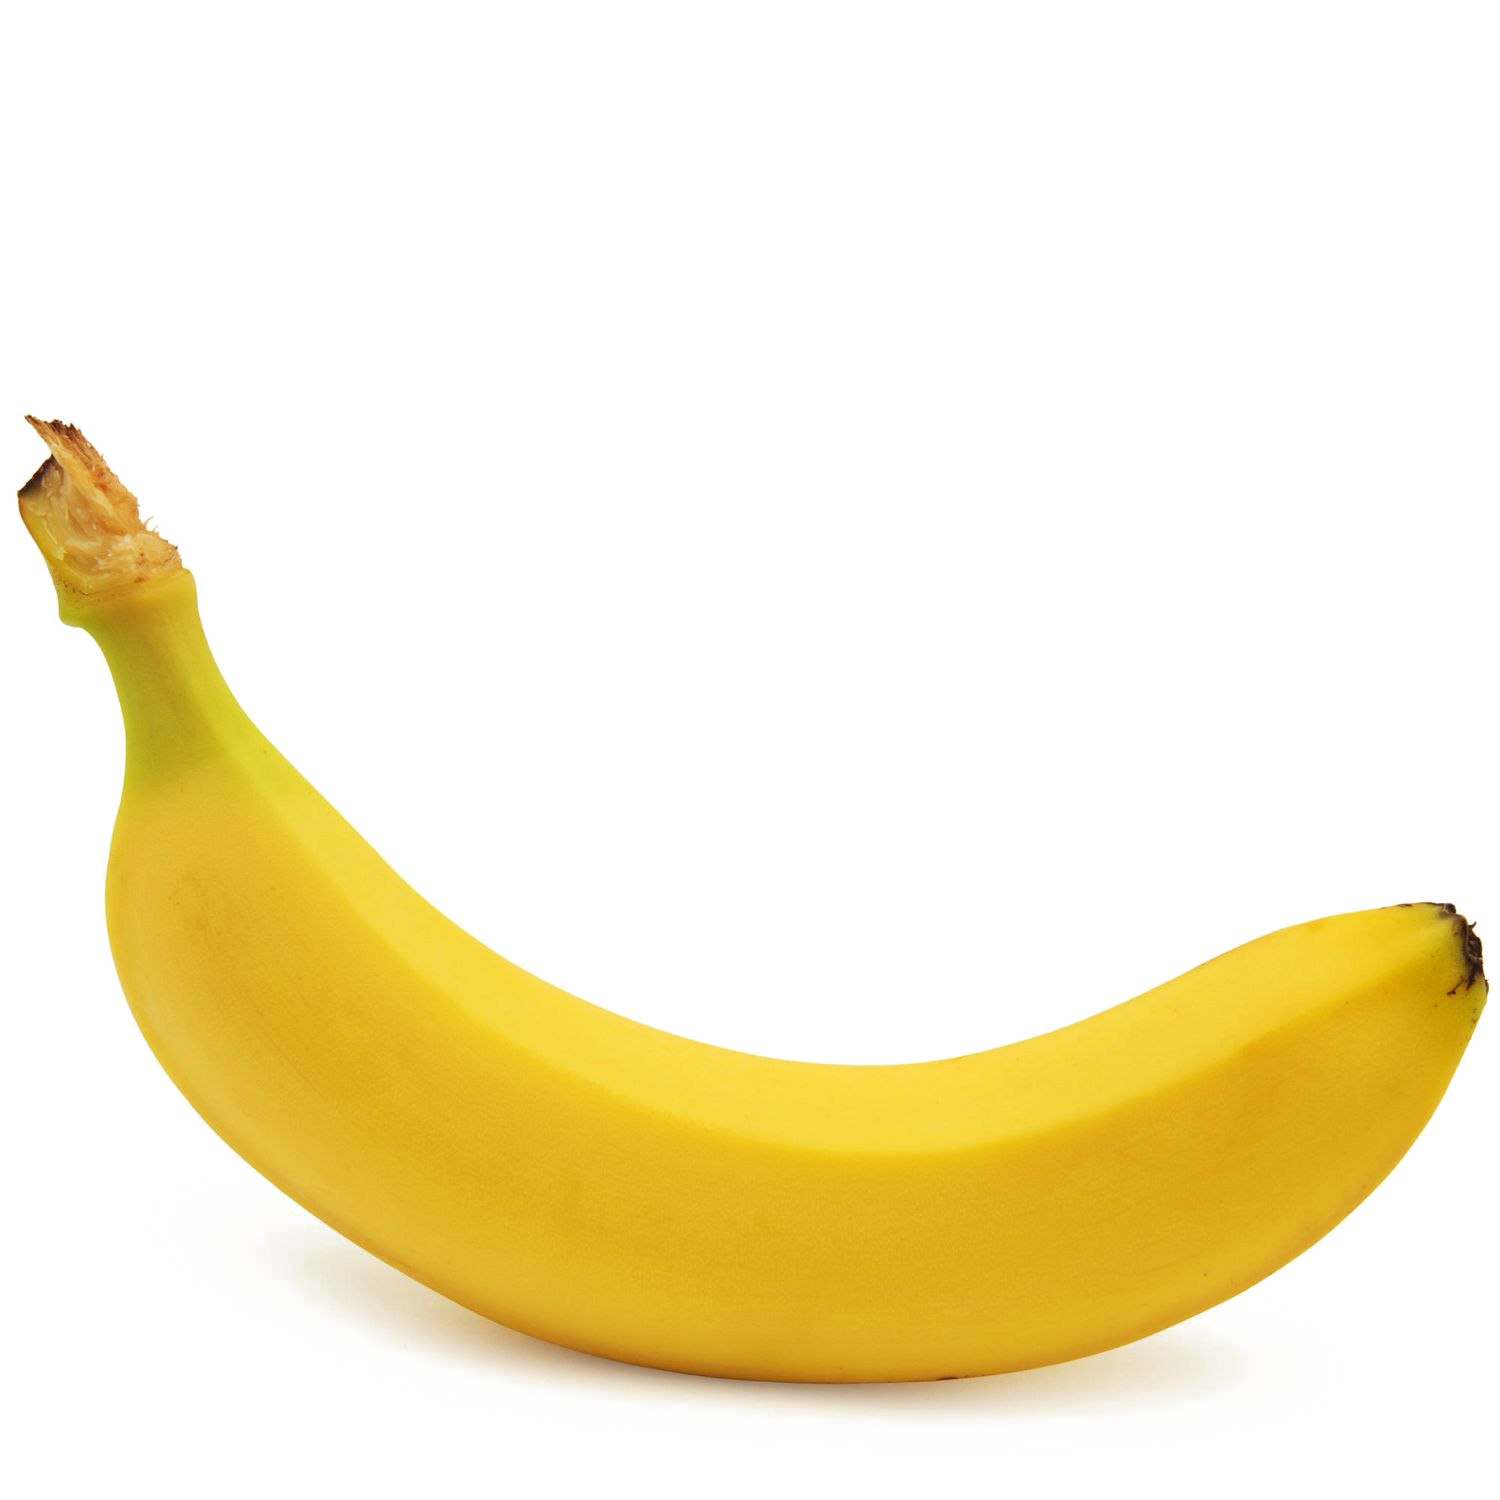 الموز صورة PNG مجانية